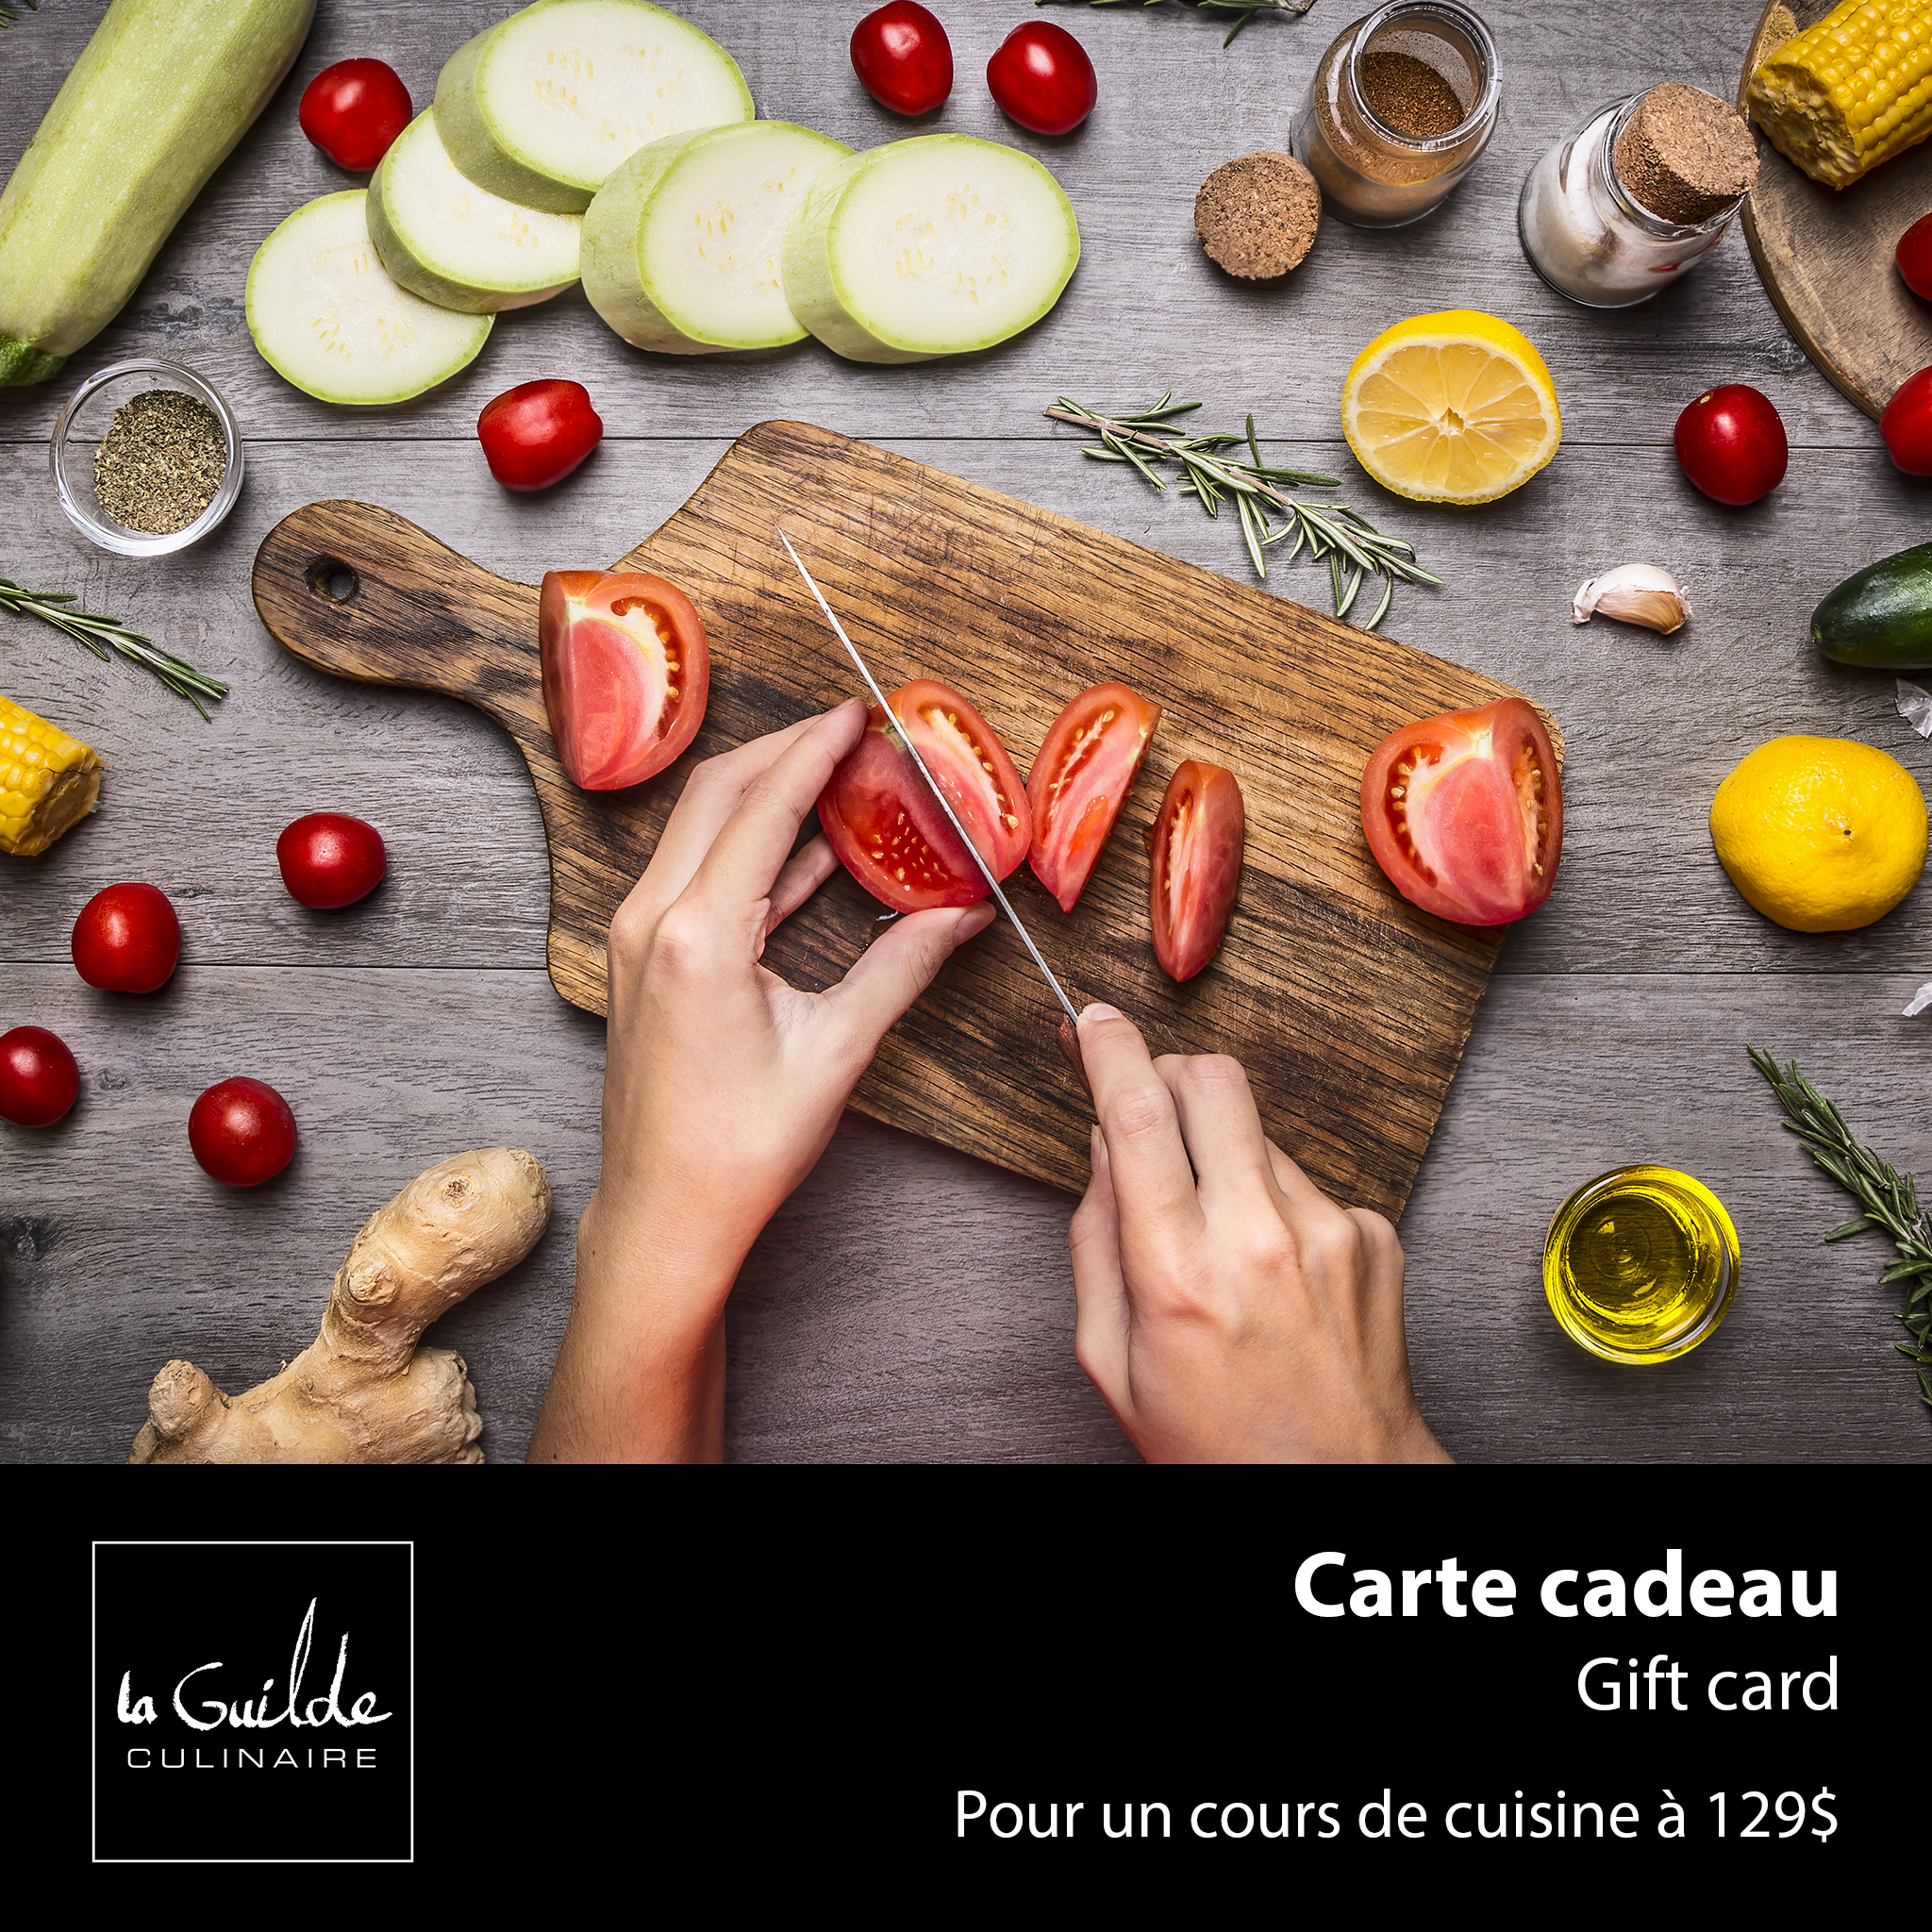 CARTE CADEAU COURS DE CUISINE POUR 1 PERSONNE    - La Guilde Culinaire - Carte cadeau - 